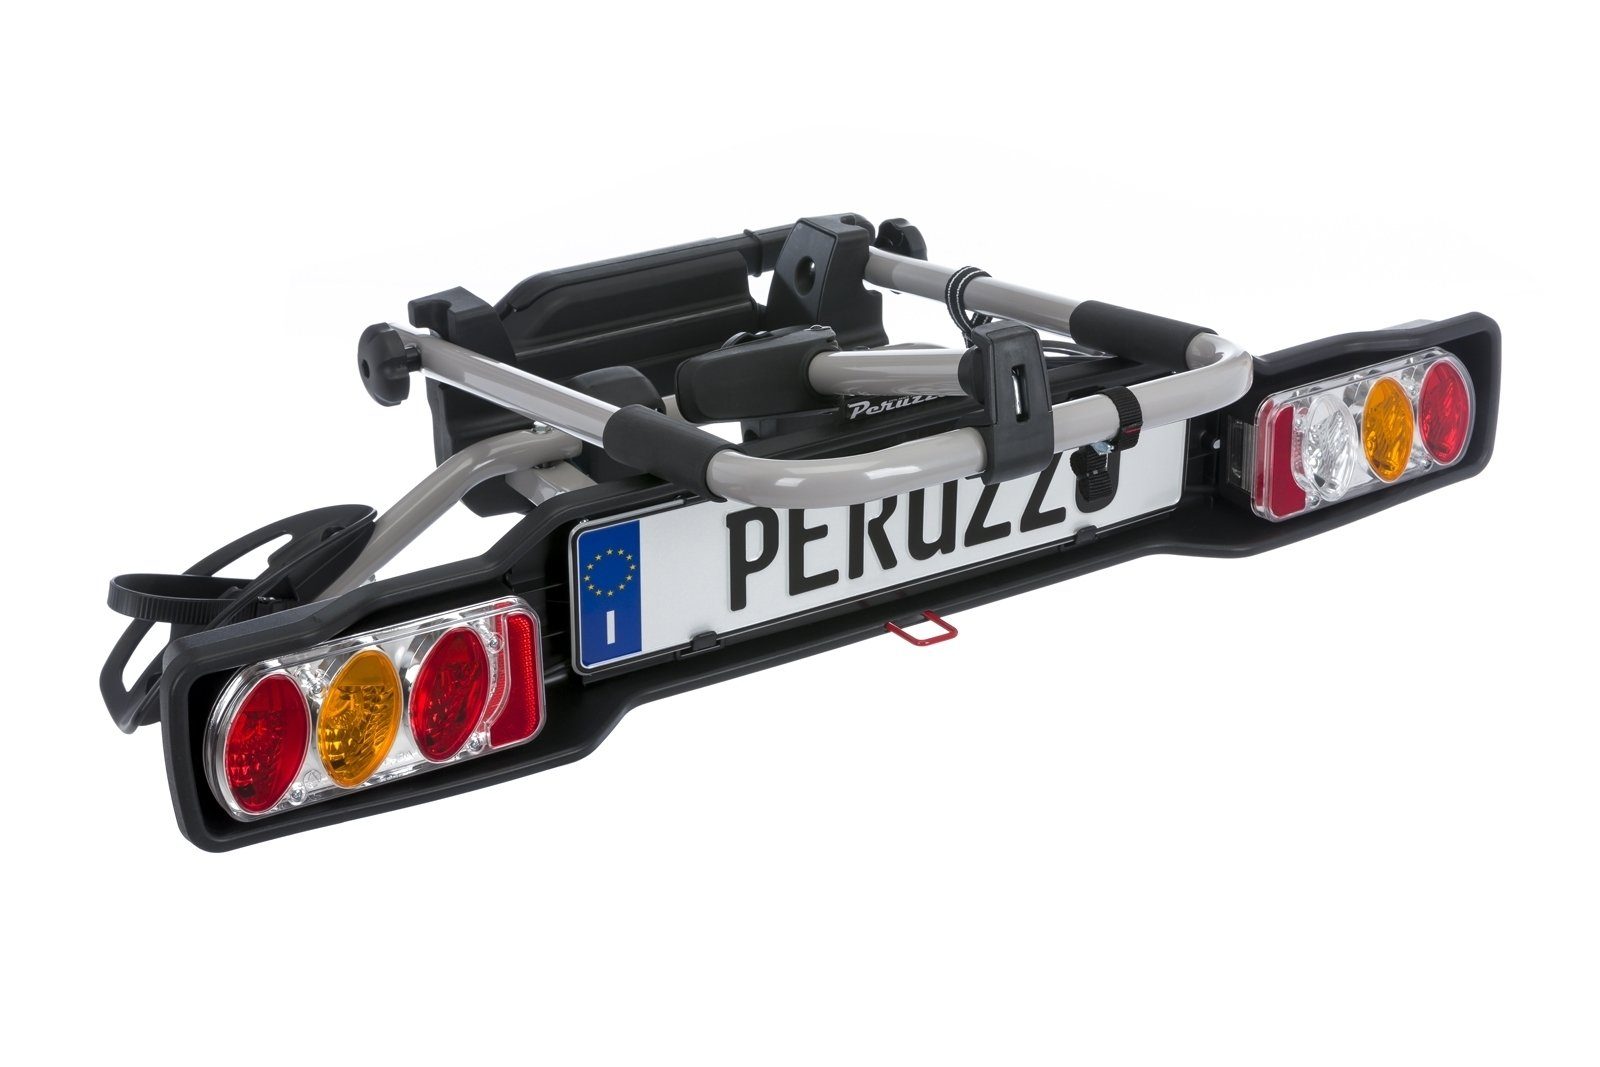 2 Kupplungsfahrradträger PARMA Fahrradträger Peruzzo PERUZZO -15,58kg Stahl -silber Fahrräder